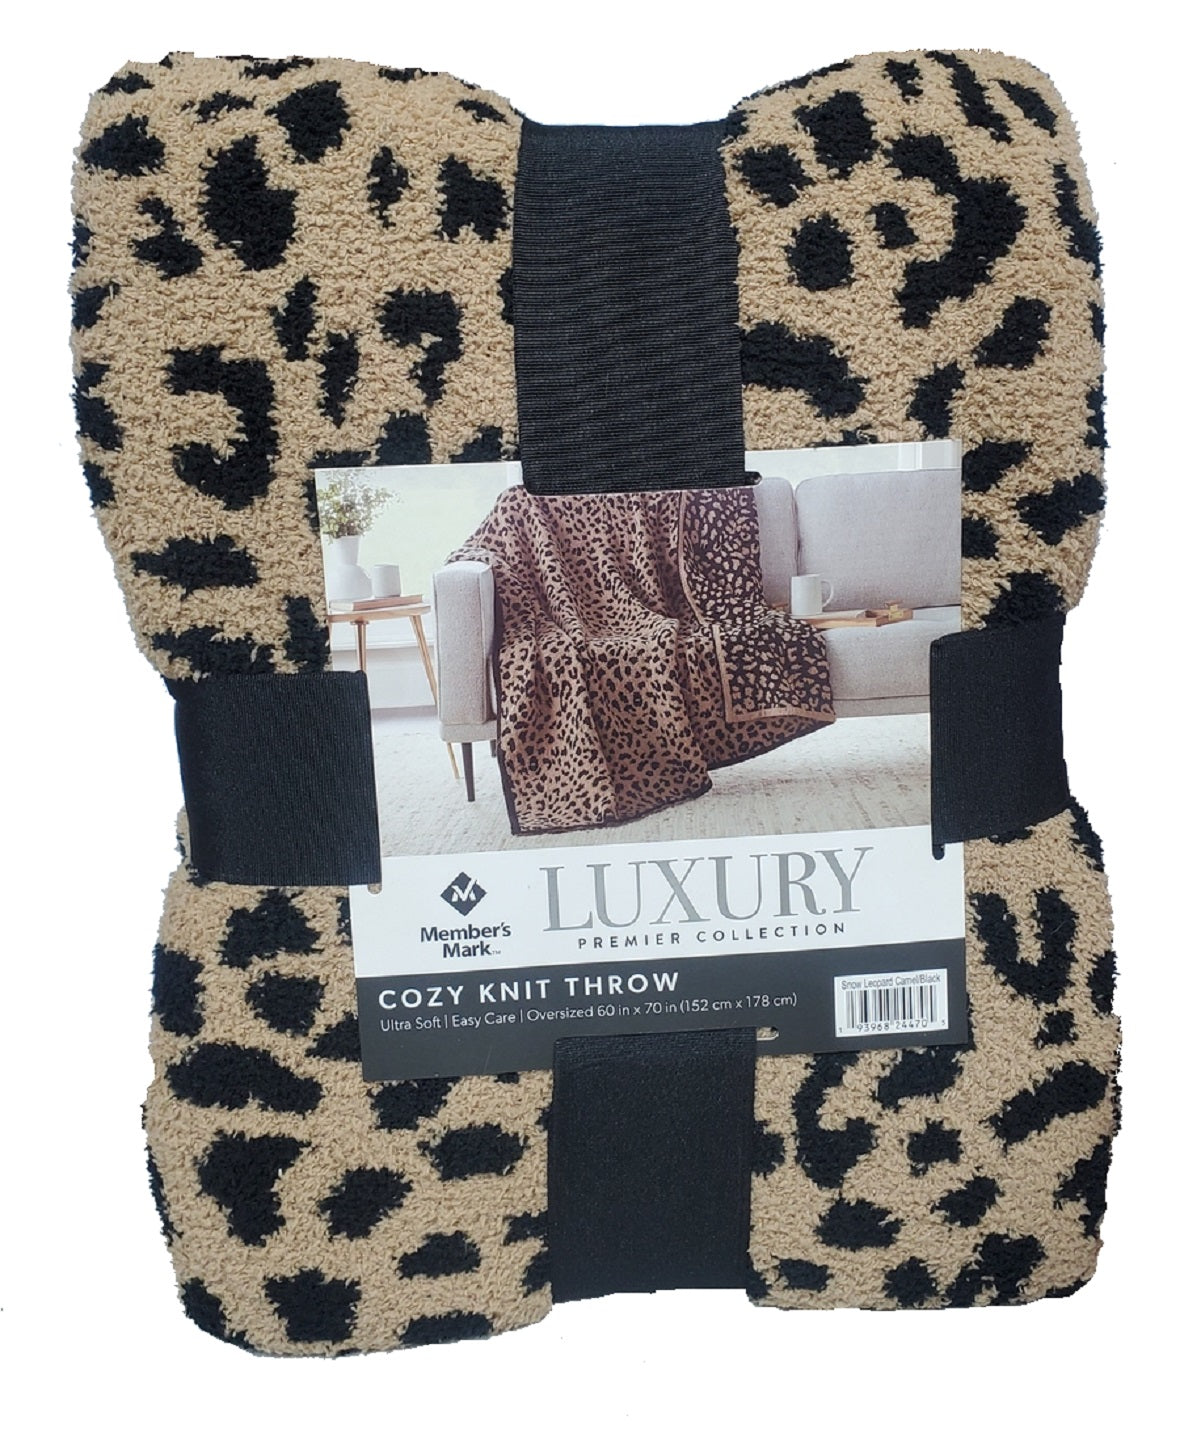 Members Mark Luxury Cozy Knit Throw 60in X 70in Snow Leopard Camel/Black